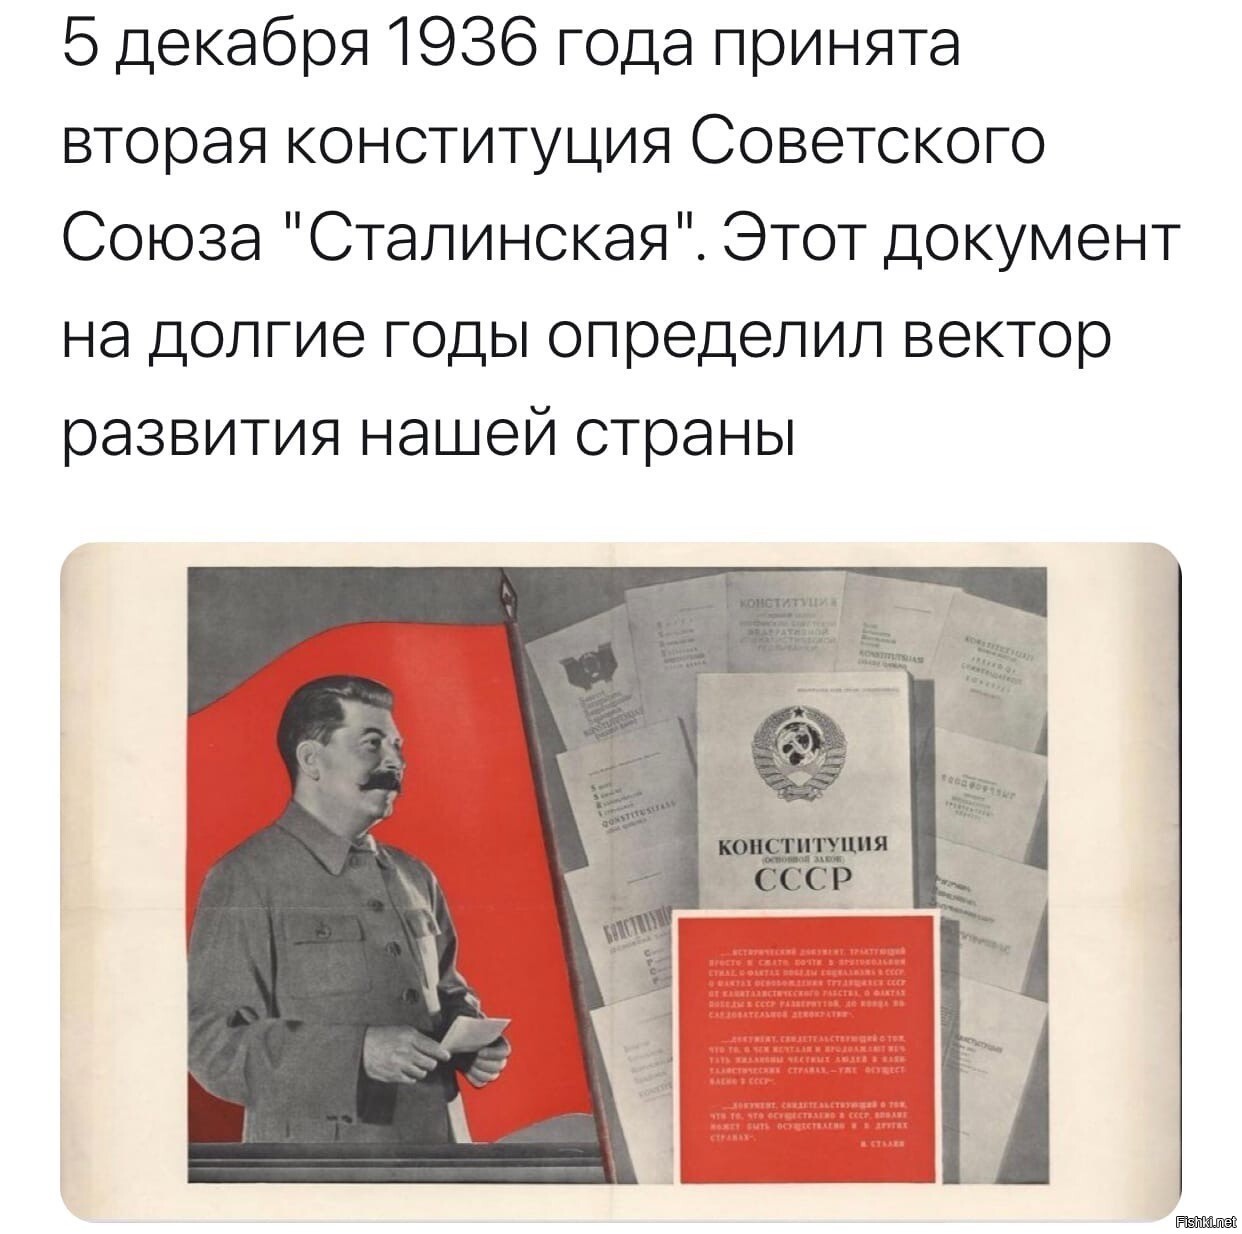 Конституция 1936 года. Конституция СССР 1936. Сталинская Конституция 1936 года плакат. Открытки 1936 года.